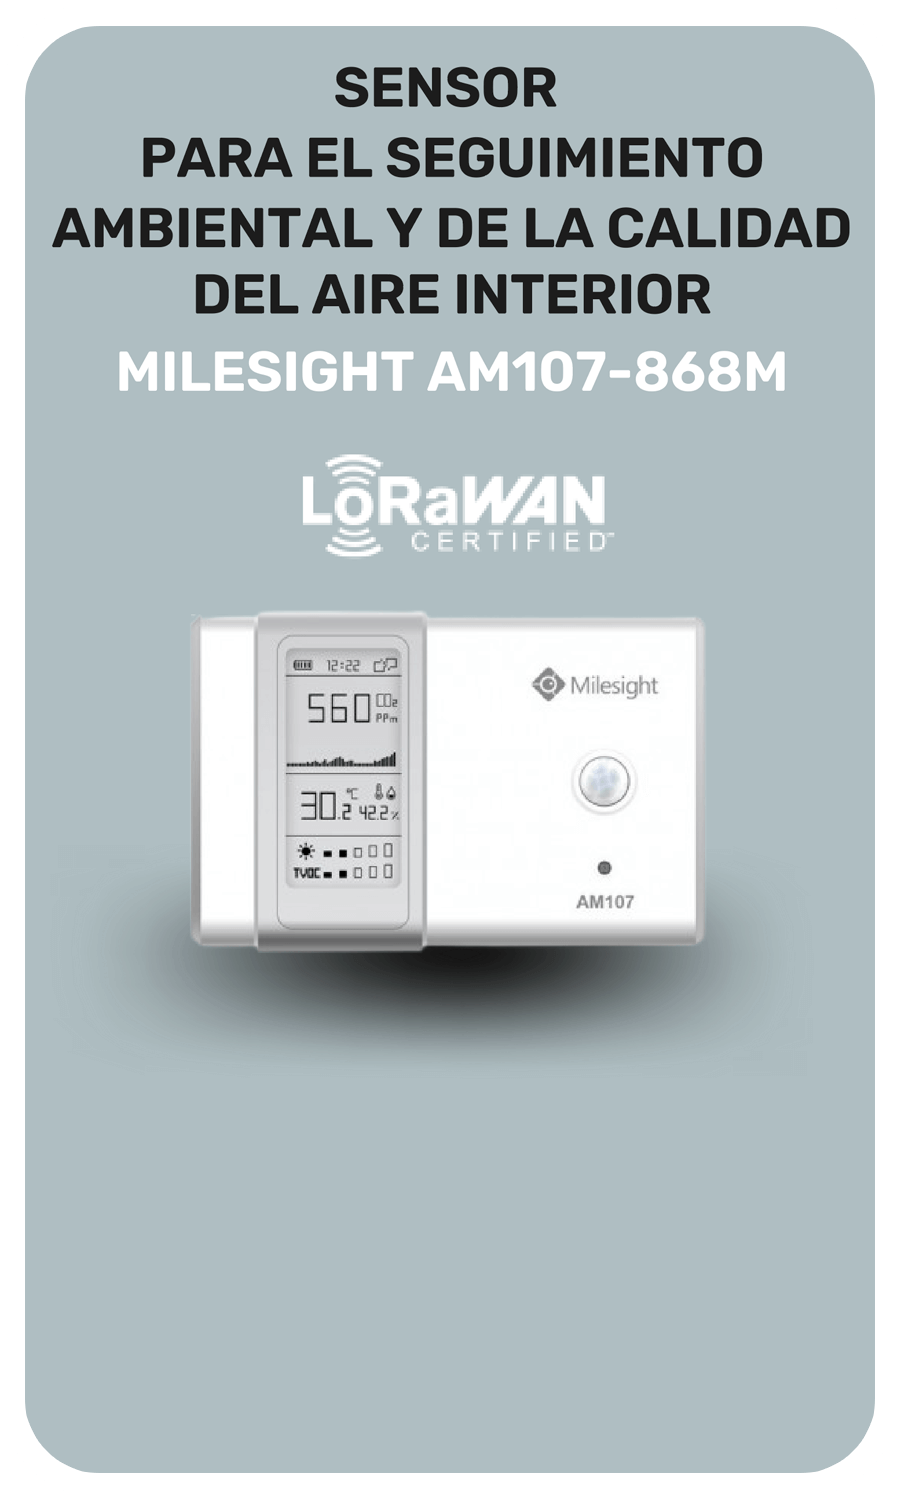 Milesight Sensor b&aacute;sico AM107-868M LoRaWAN&reg; para monitoreo de la calidad del aire interior y el ambiente